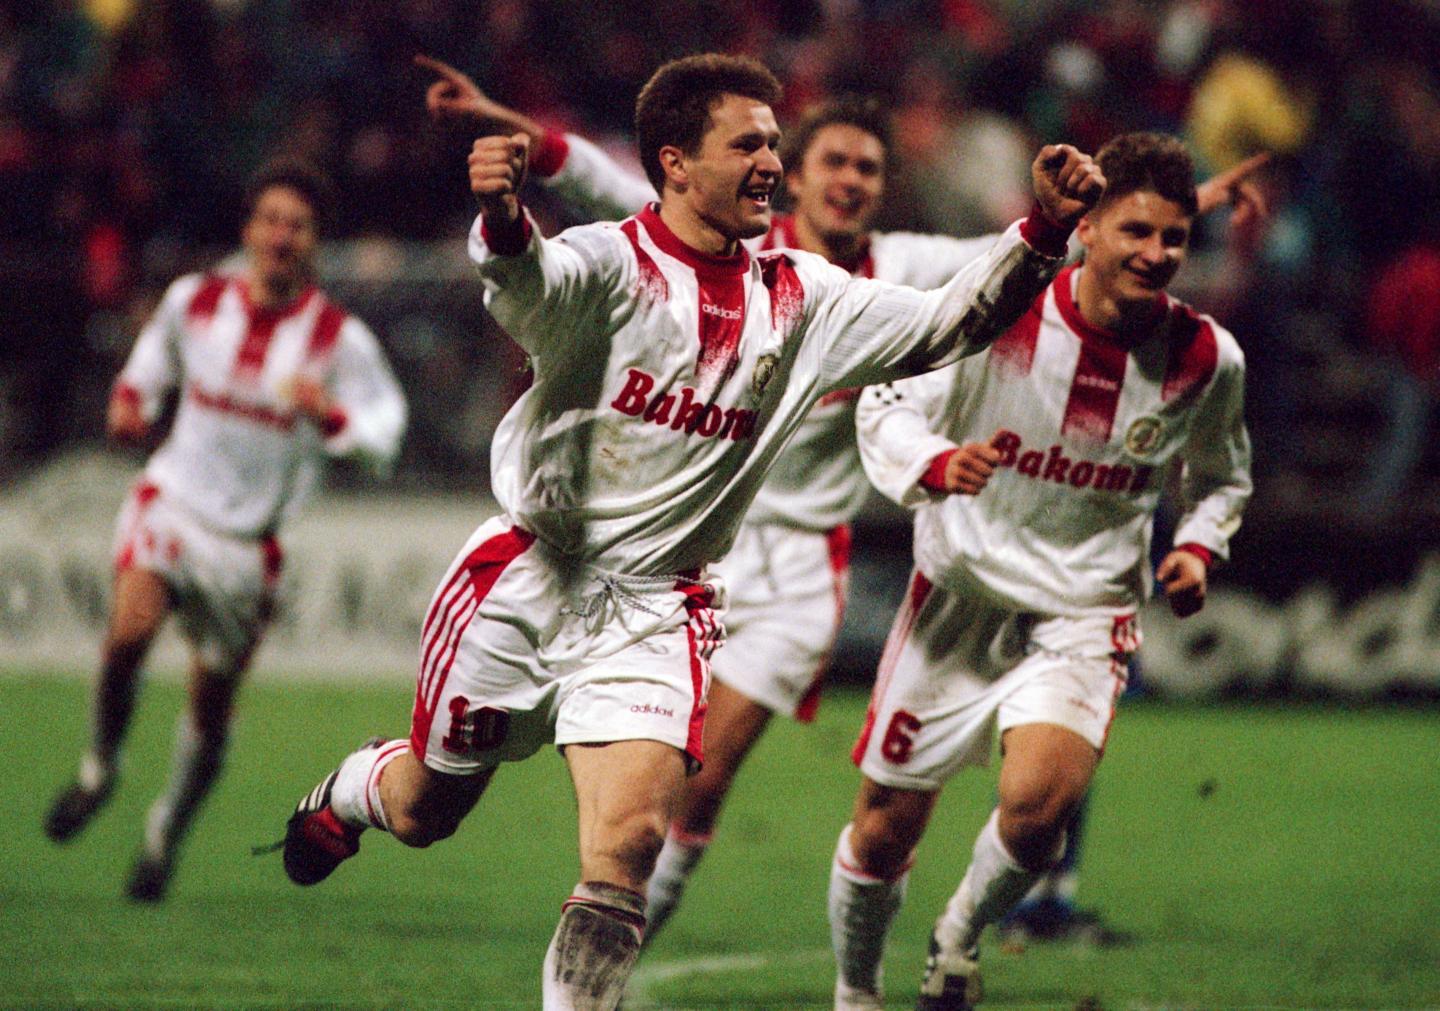 Ryszard Czerwiec po zdobyciu bramki podczas meczu Widzew Łódź - Steaua Bukareszt 2:0 (30.10.1996).